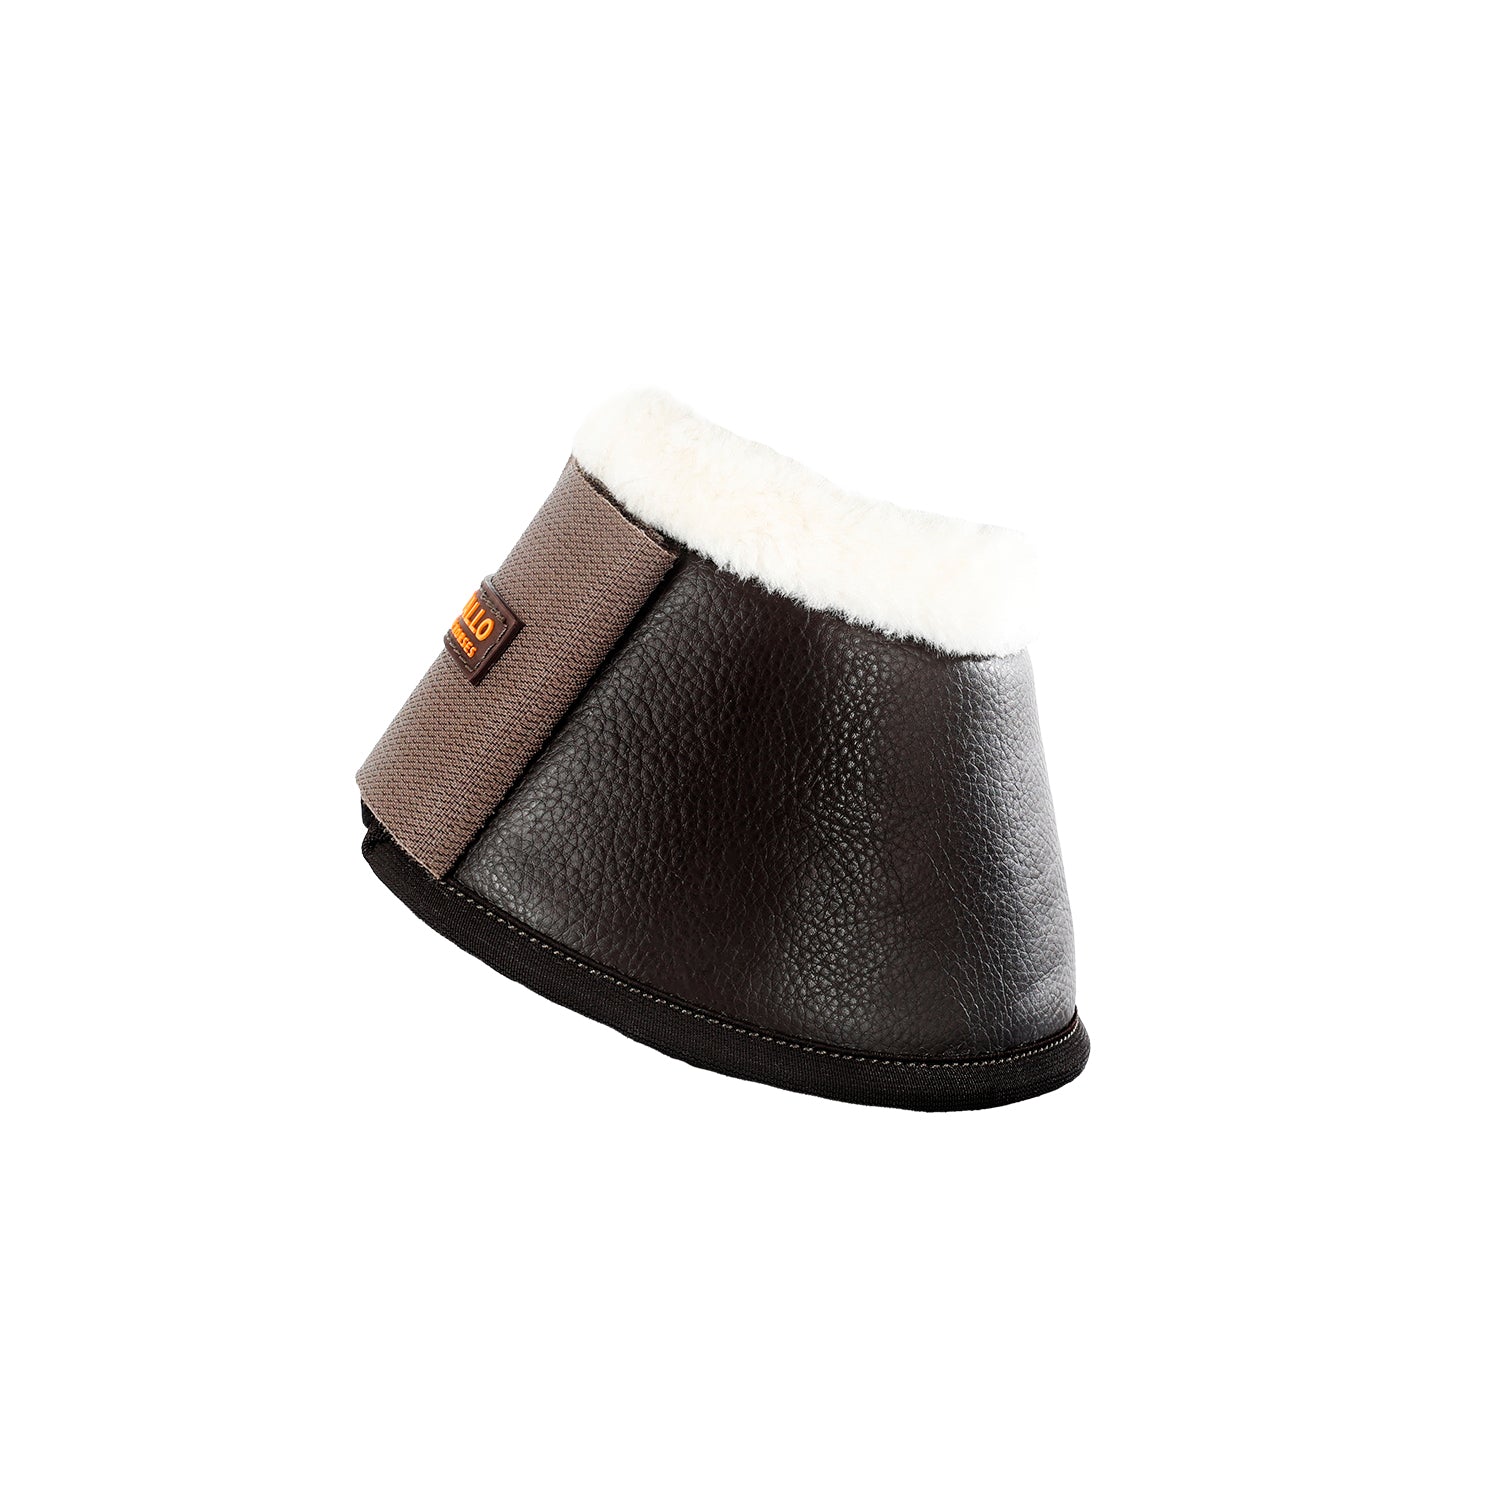 Gamaschen Eco-leather bell boots velcro closure - Reitstiefel Kandel - Dein Reitshop